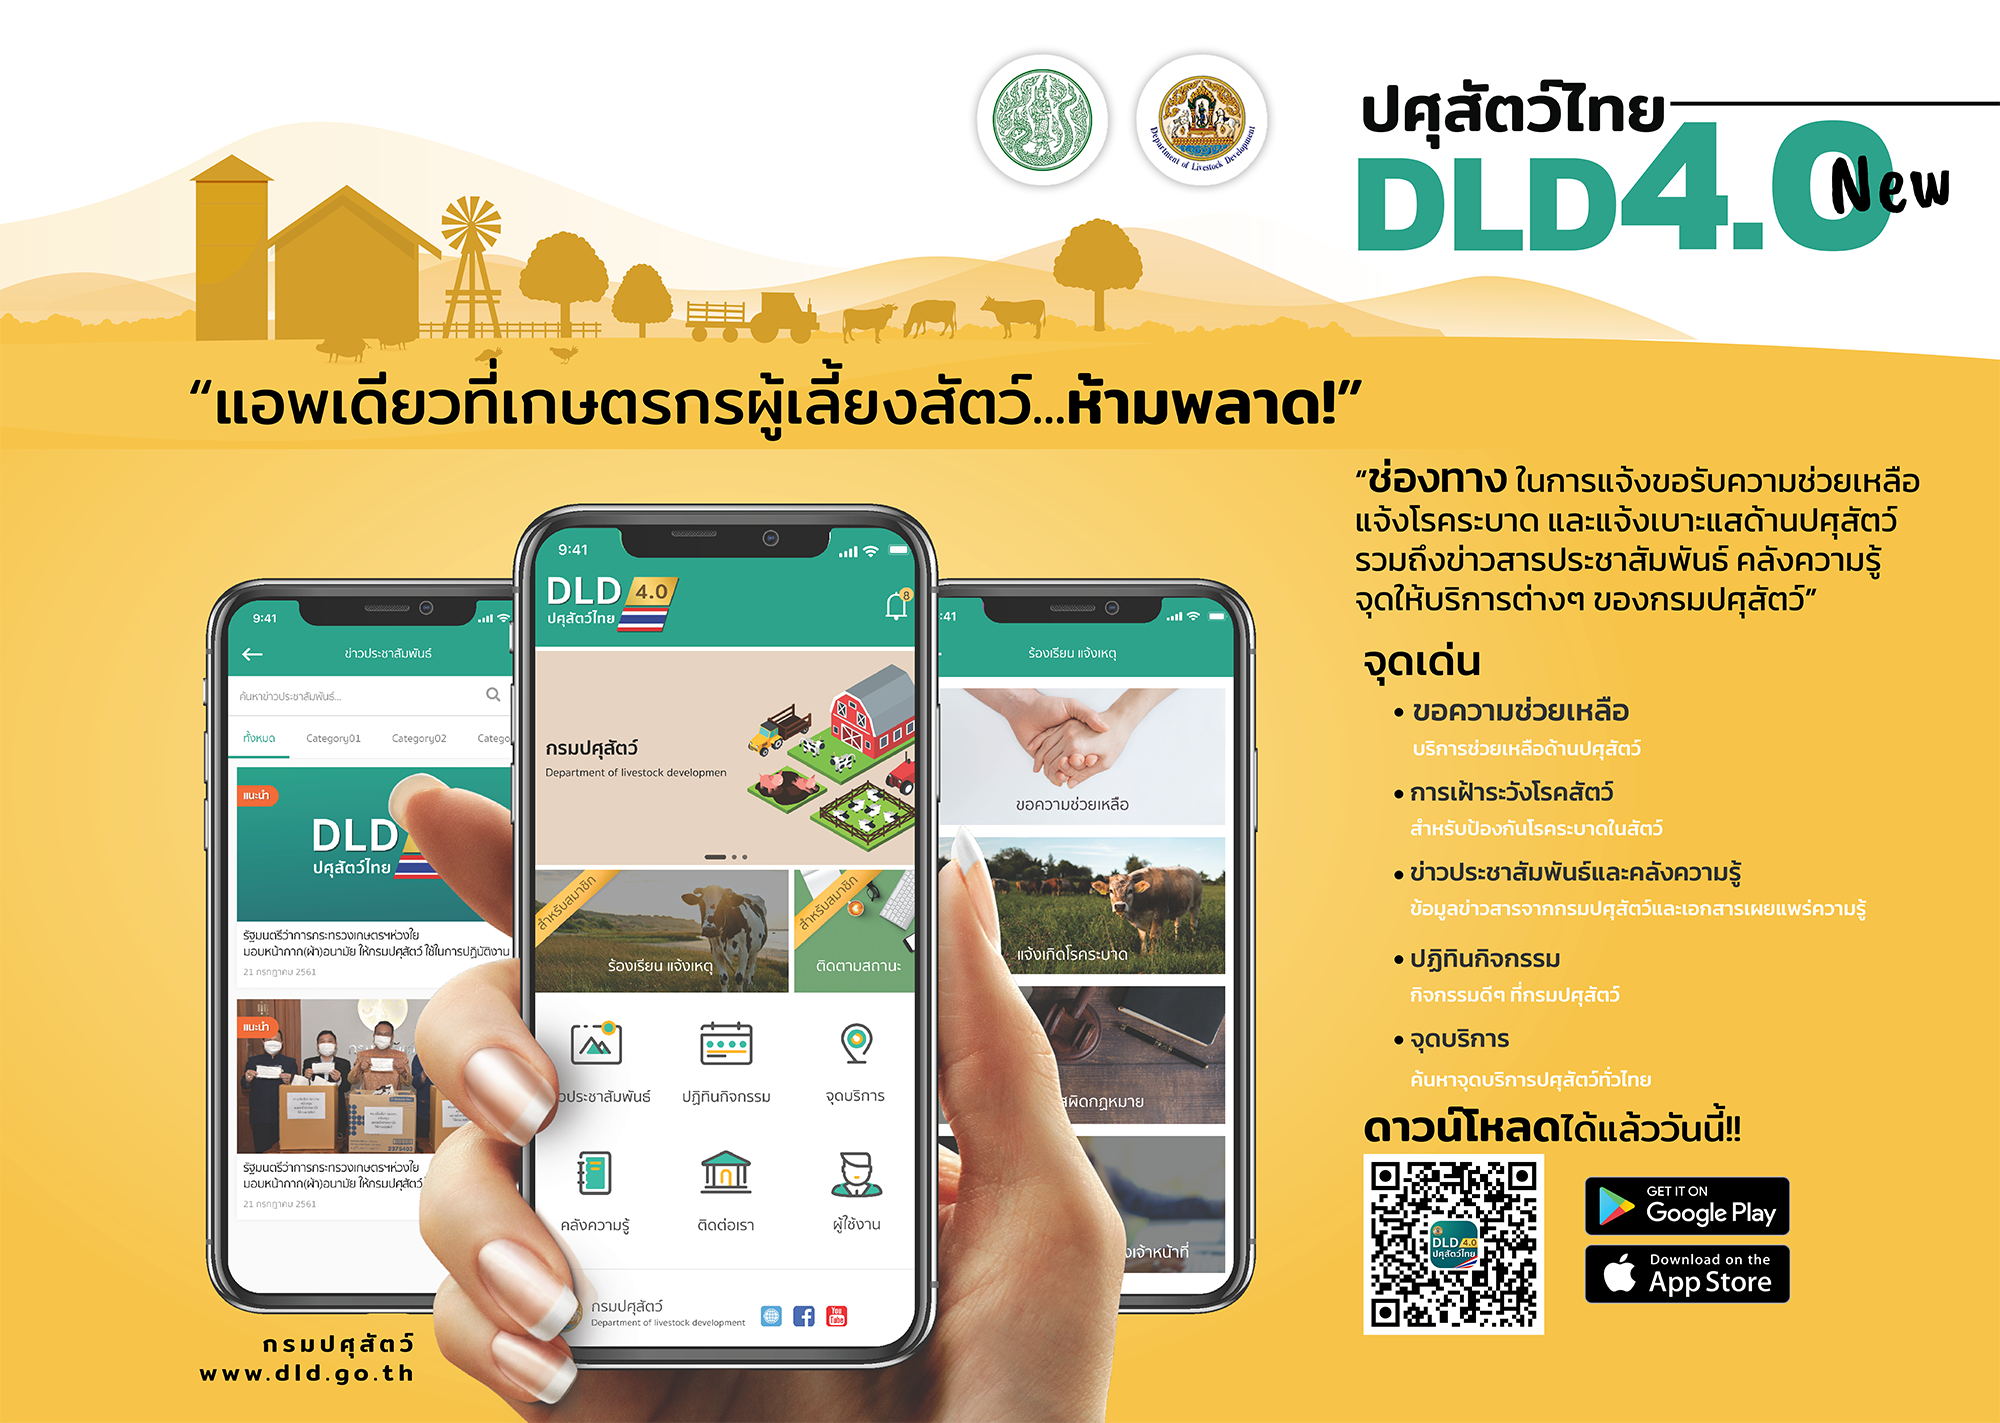 ระบบปศุสัตว์ไทย 4.0 (DLD 4.0) แอพเดียวที่เกษตรกรผู้เลี้ยงสัตว์ห้ามพลาด